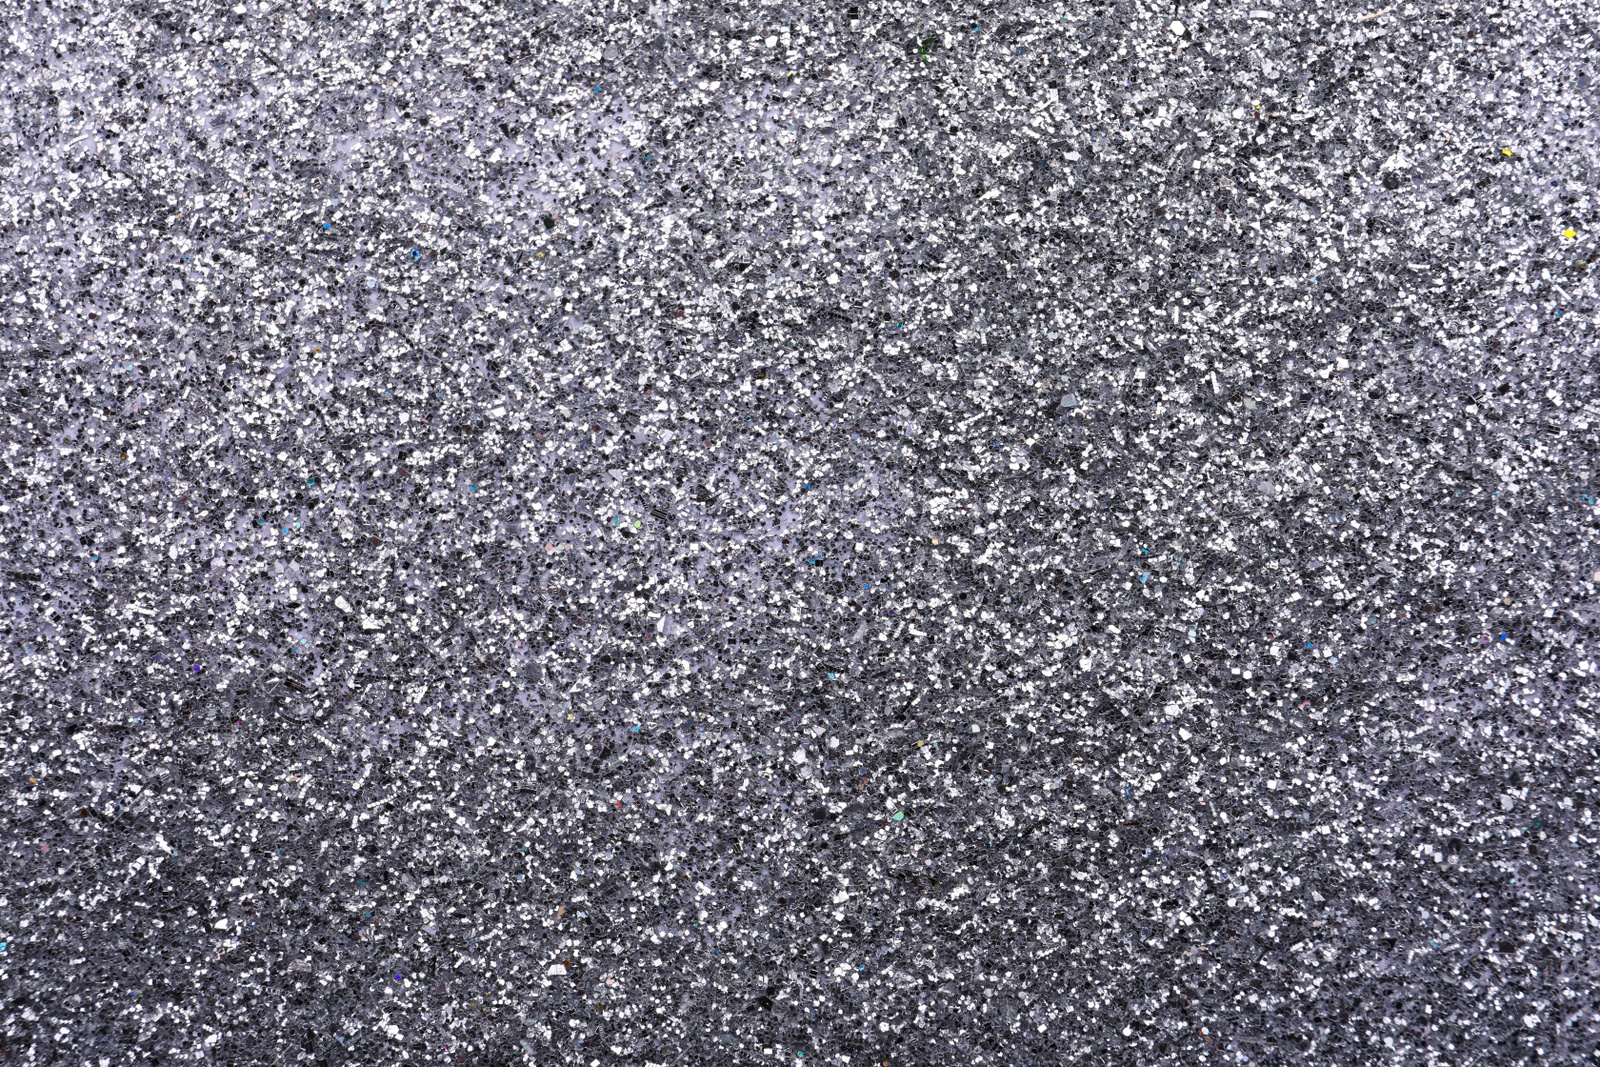 Photo of Beautiful shiny grey glitter as background, closeup